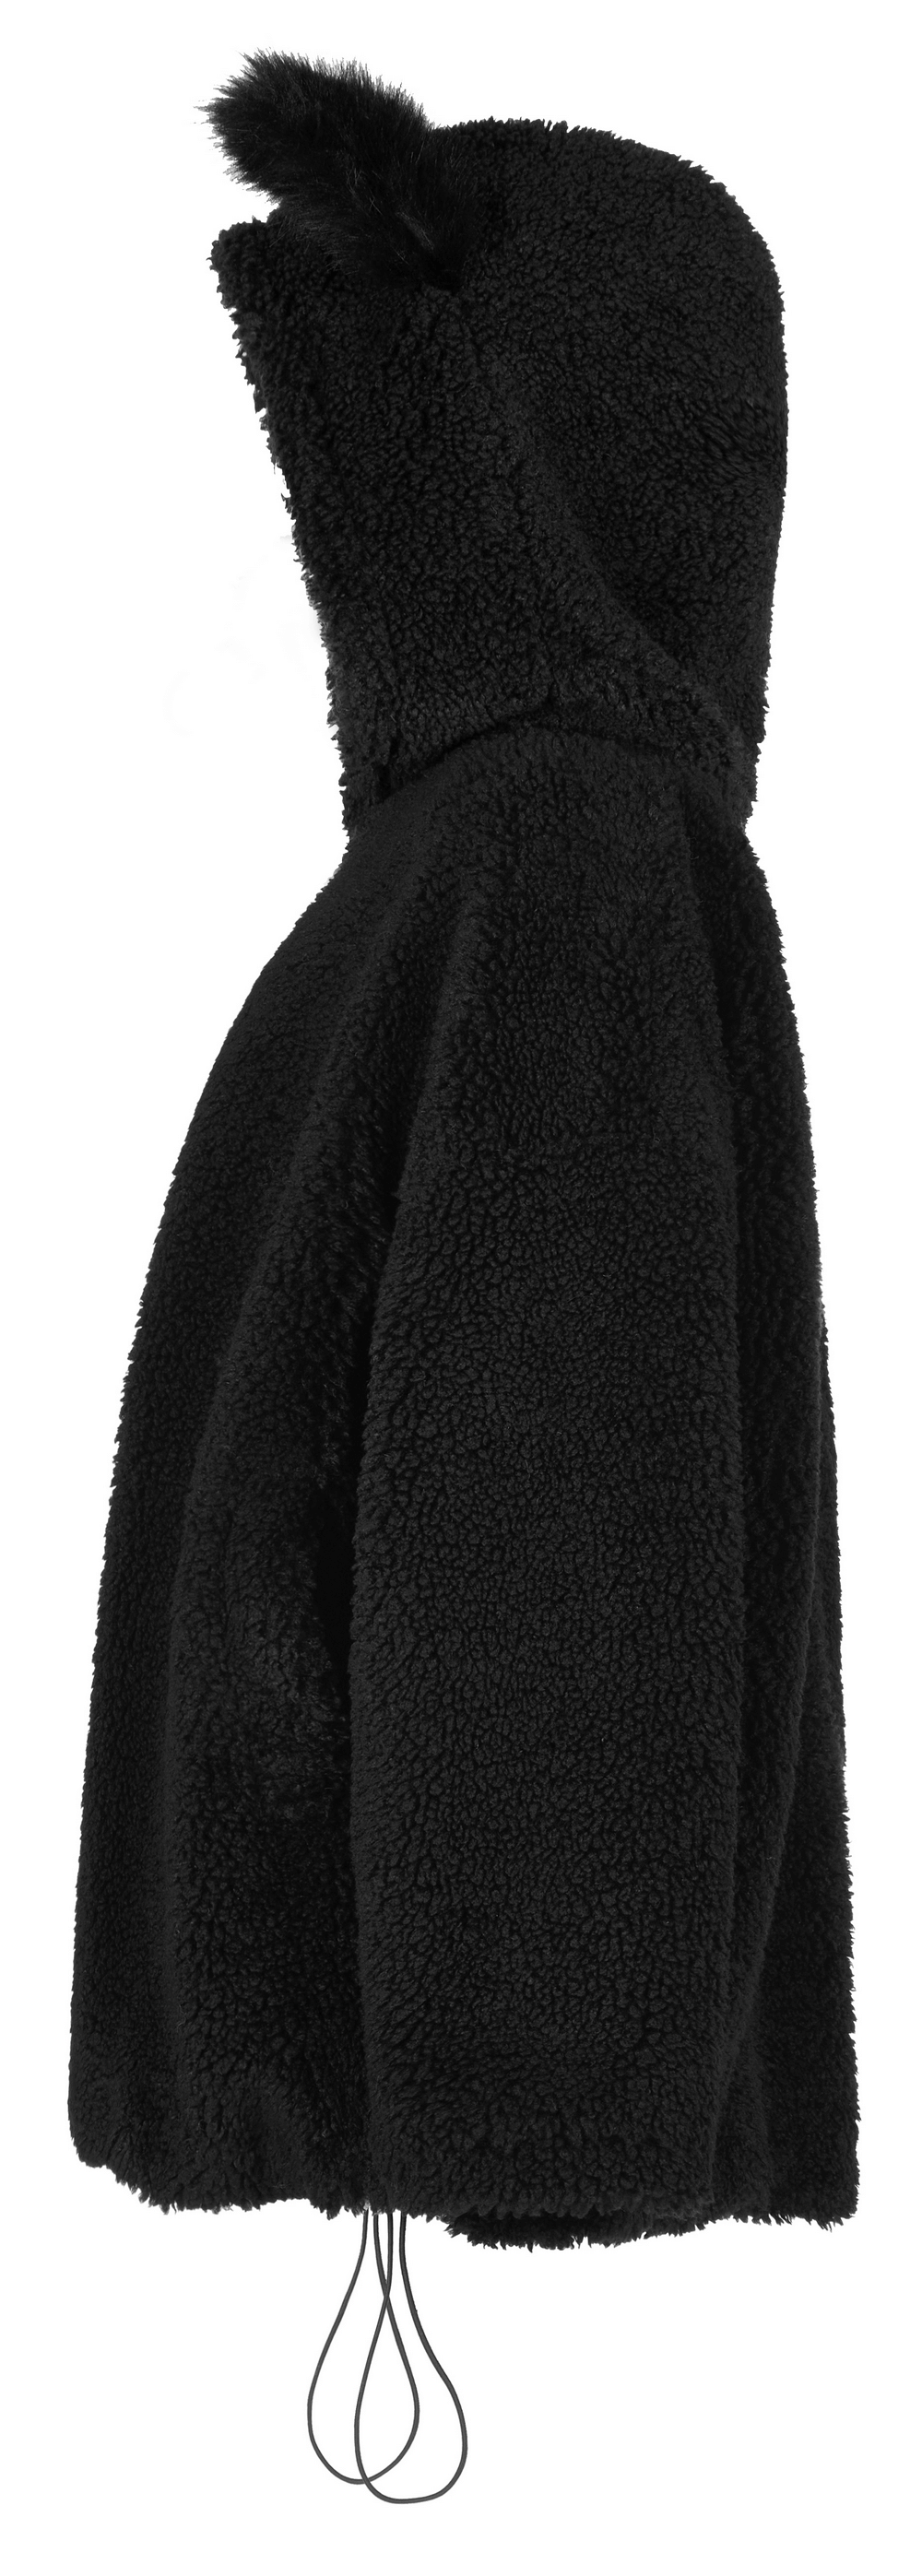 Loose Warm Fox Ear Hooded Jacket with Zipper for Women